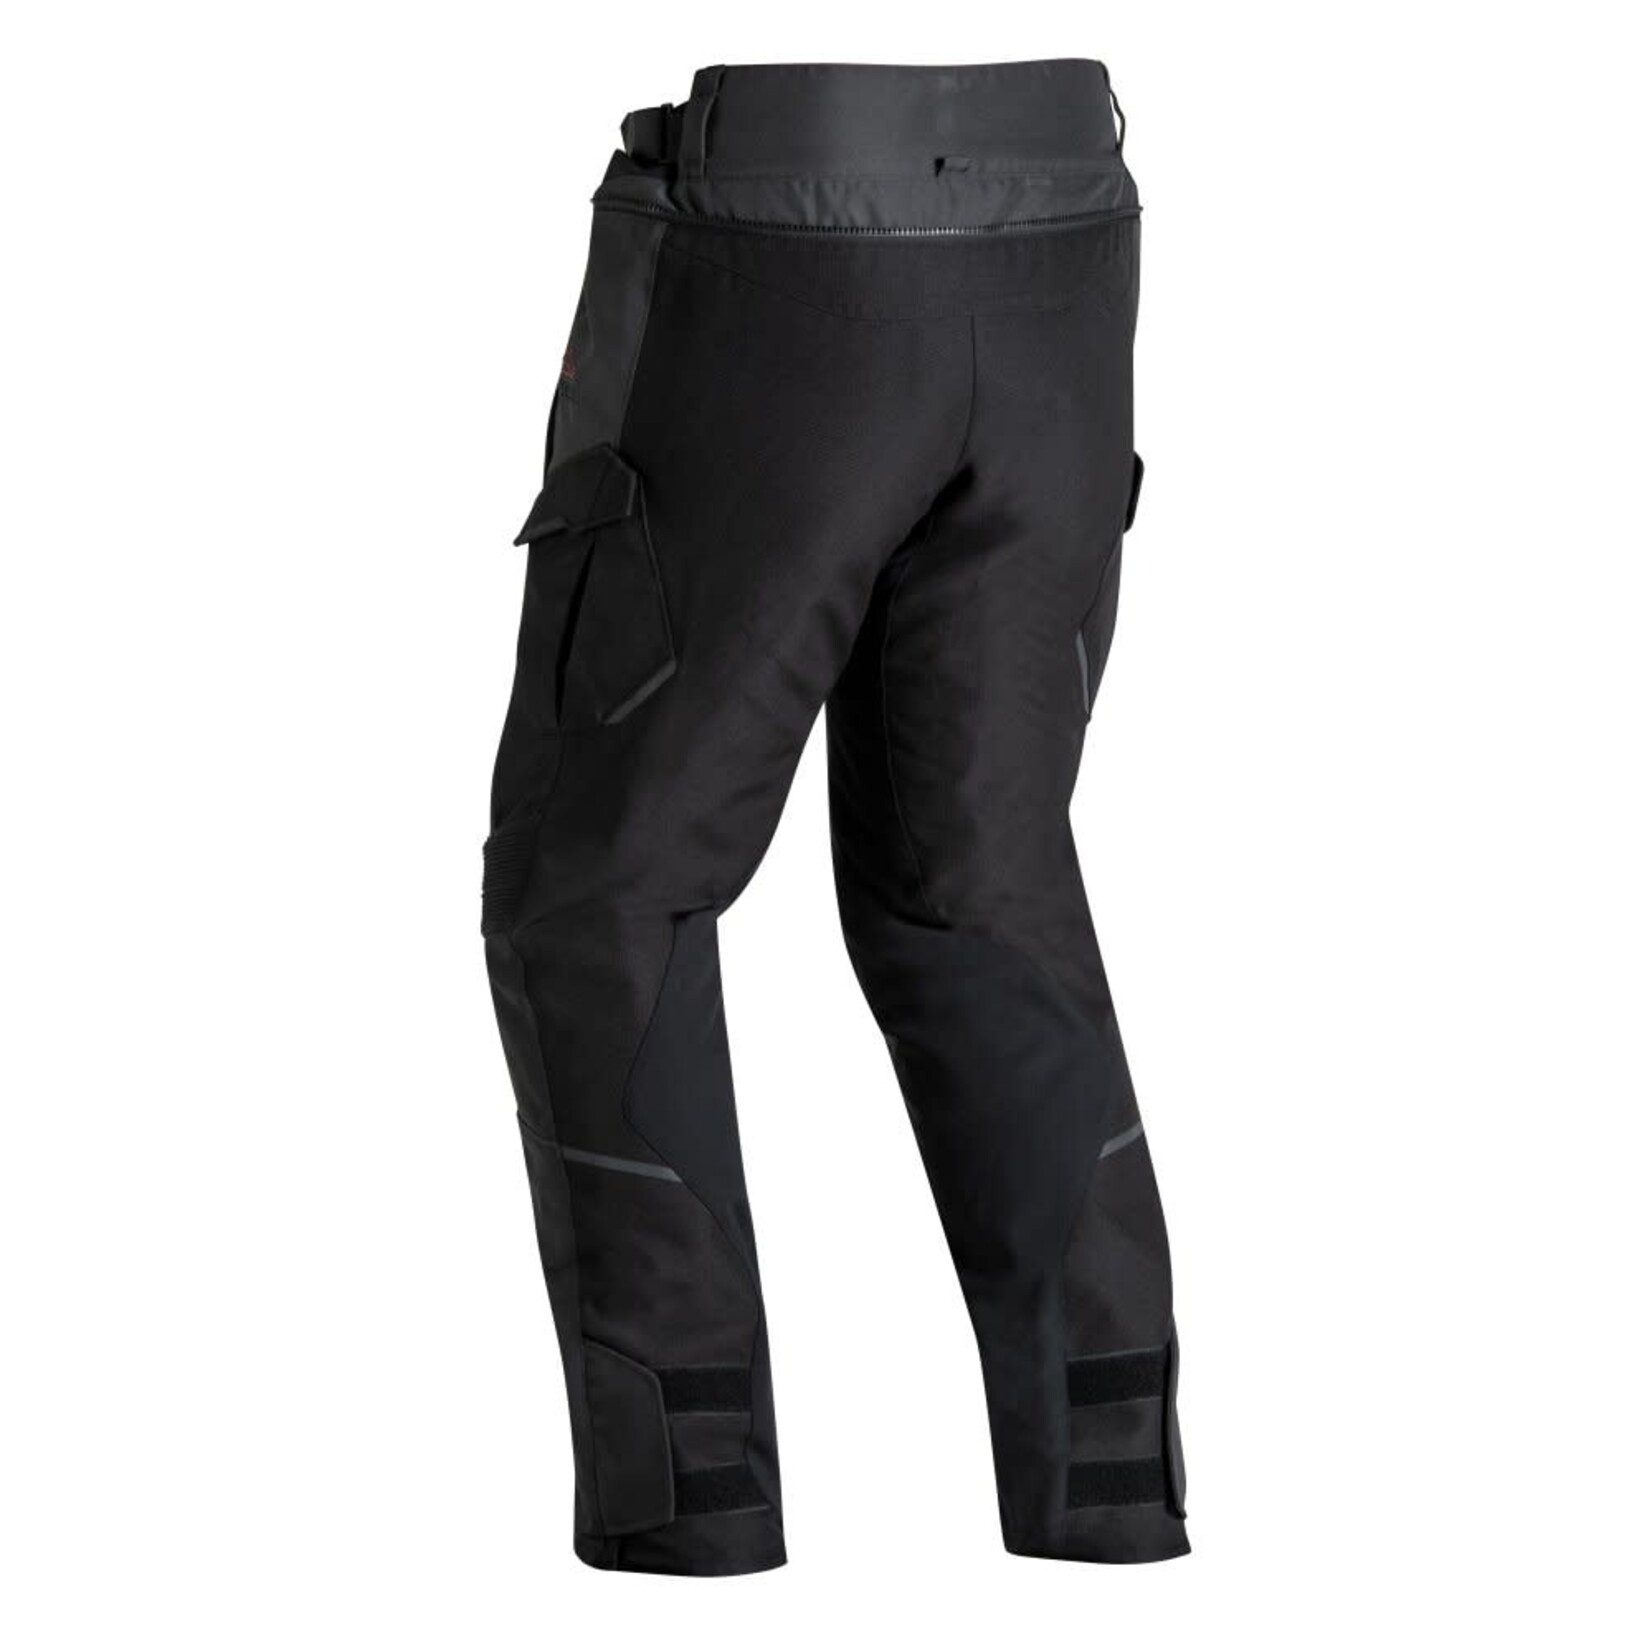 Ixon Ixon trousers textile eddas pant c black/anthracite